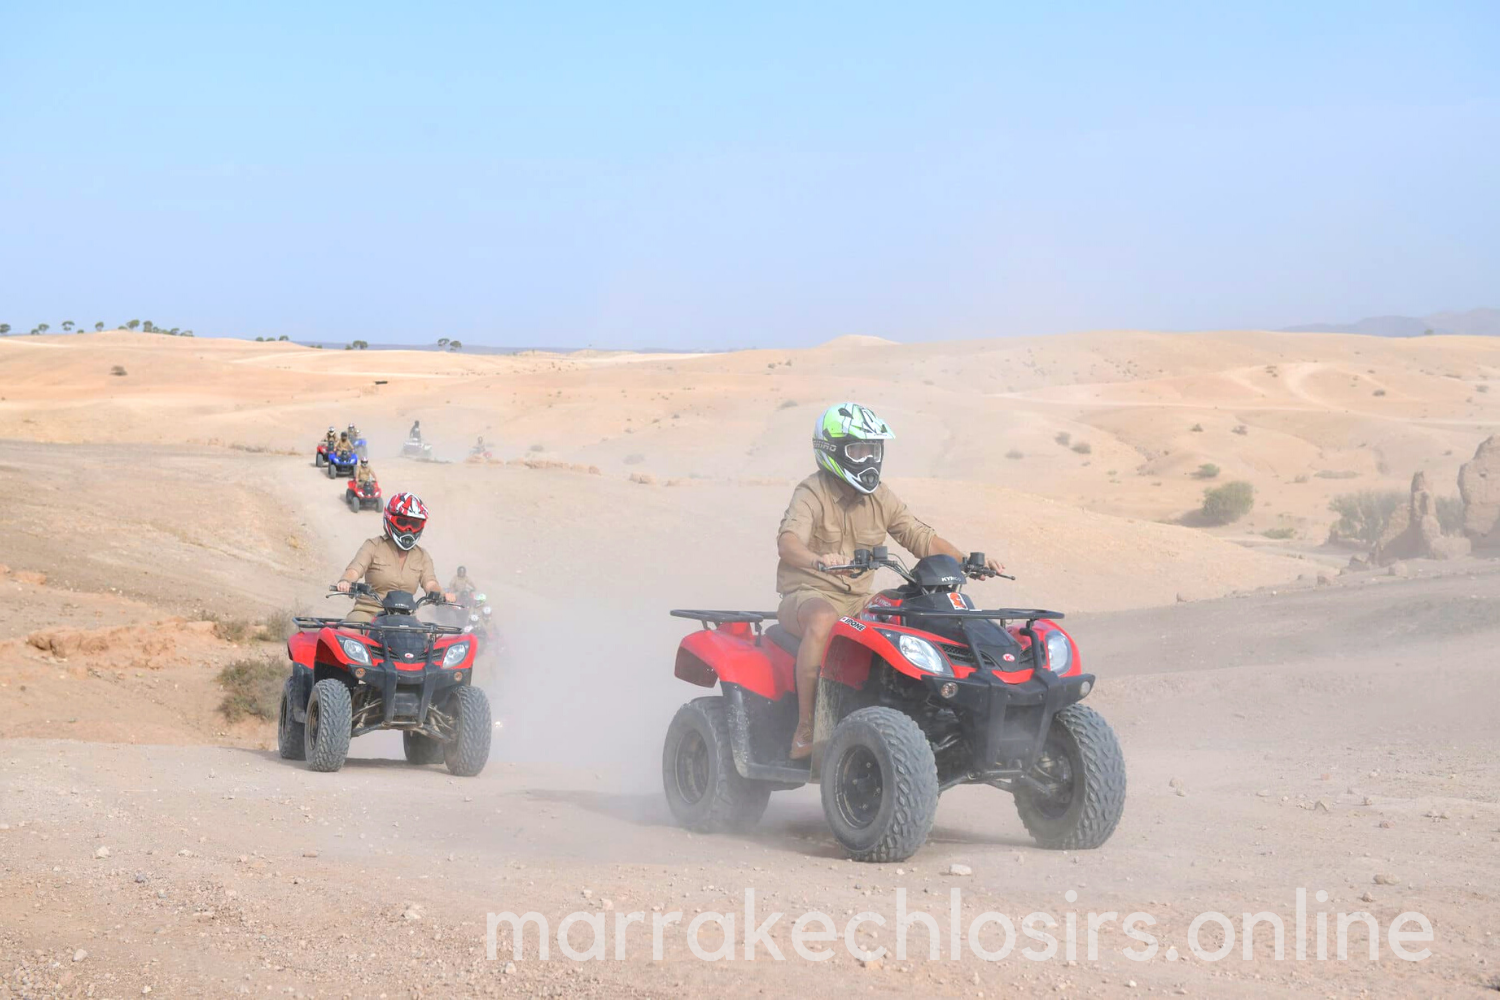 Aventure Quad au désert d'Agafay- Marrakech loisirs online